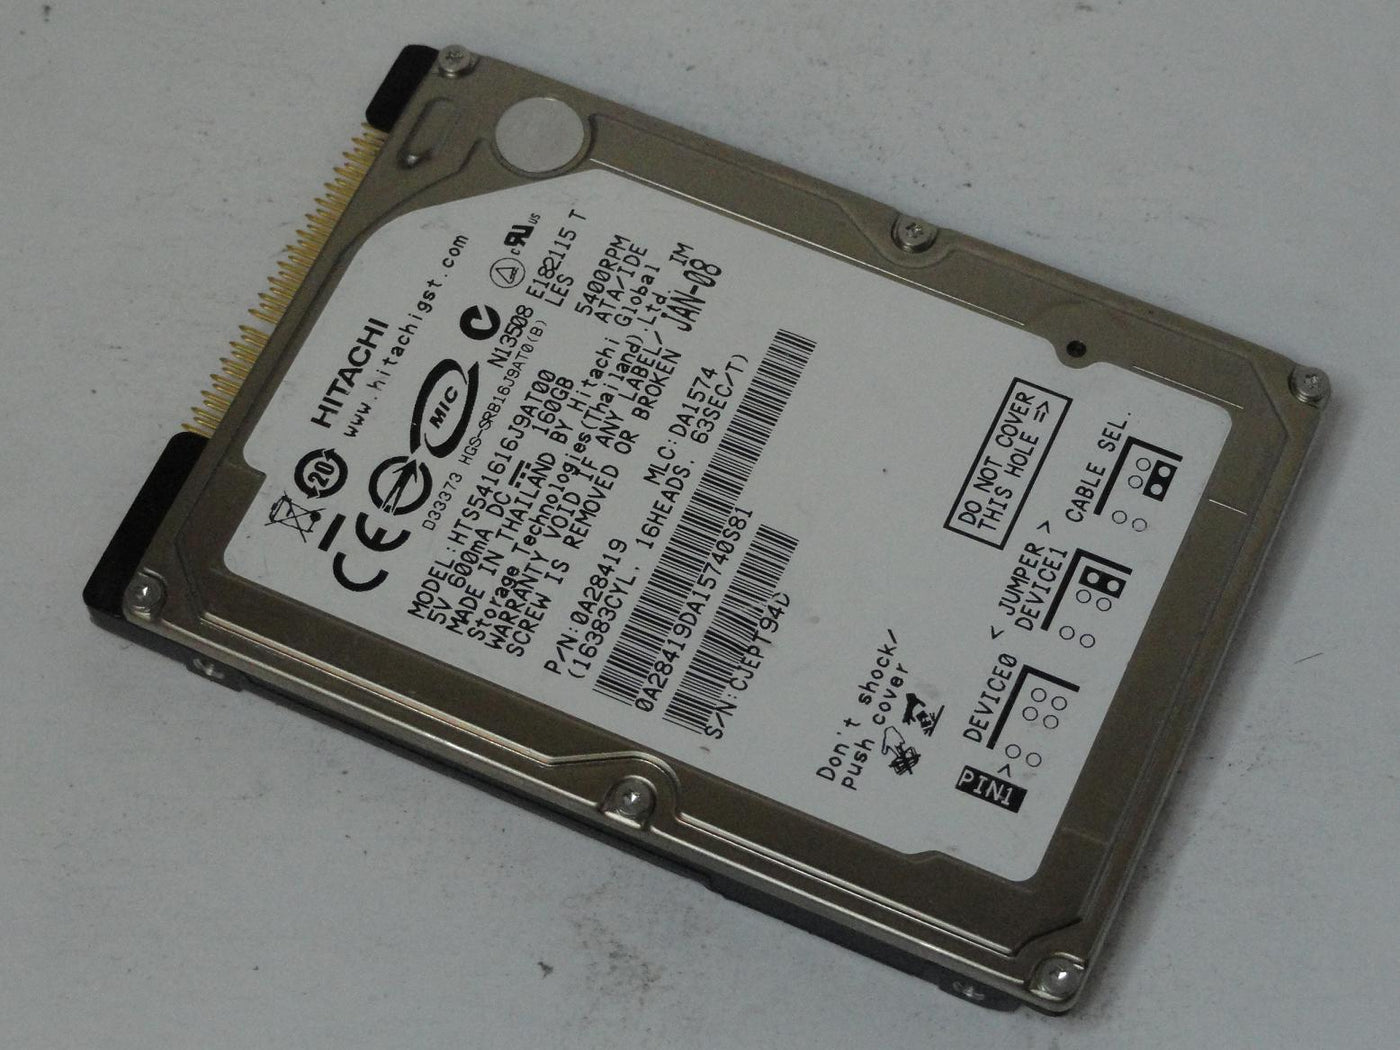 0A28419 - Hitachi 160GB IDE 5400rpm 2.5in HDD - Refurbished